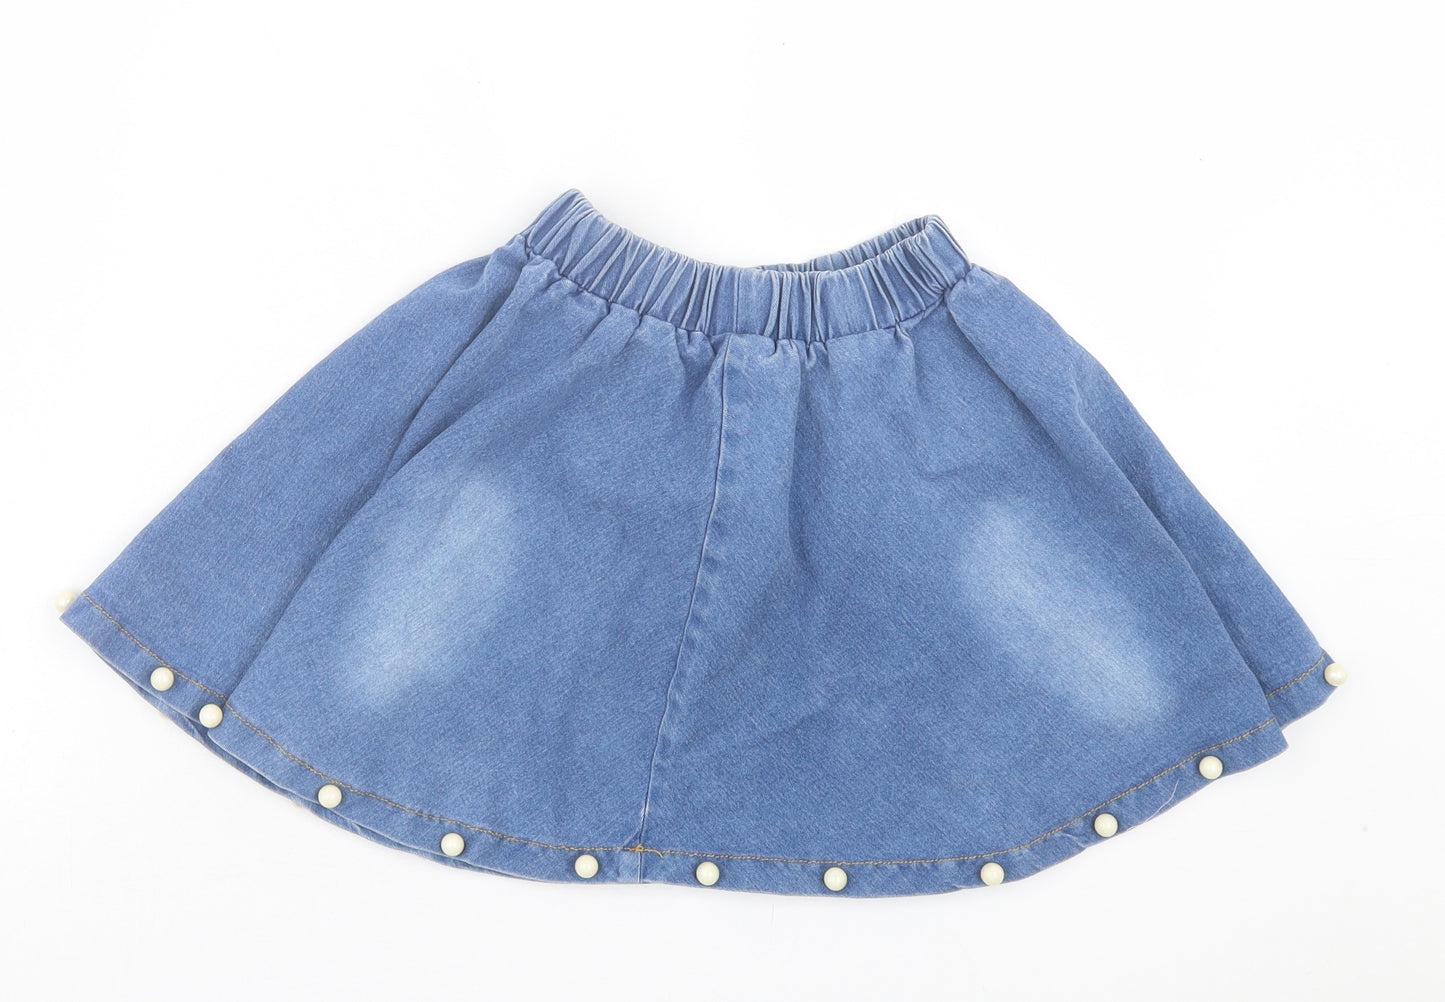 Preworn Girls Blue Cotton Skater Skirt Size 11-12 Years Regular Pull On